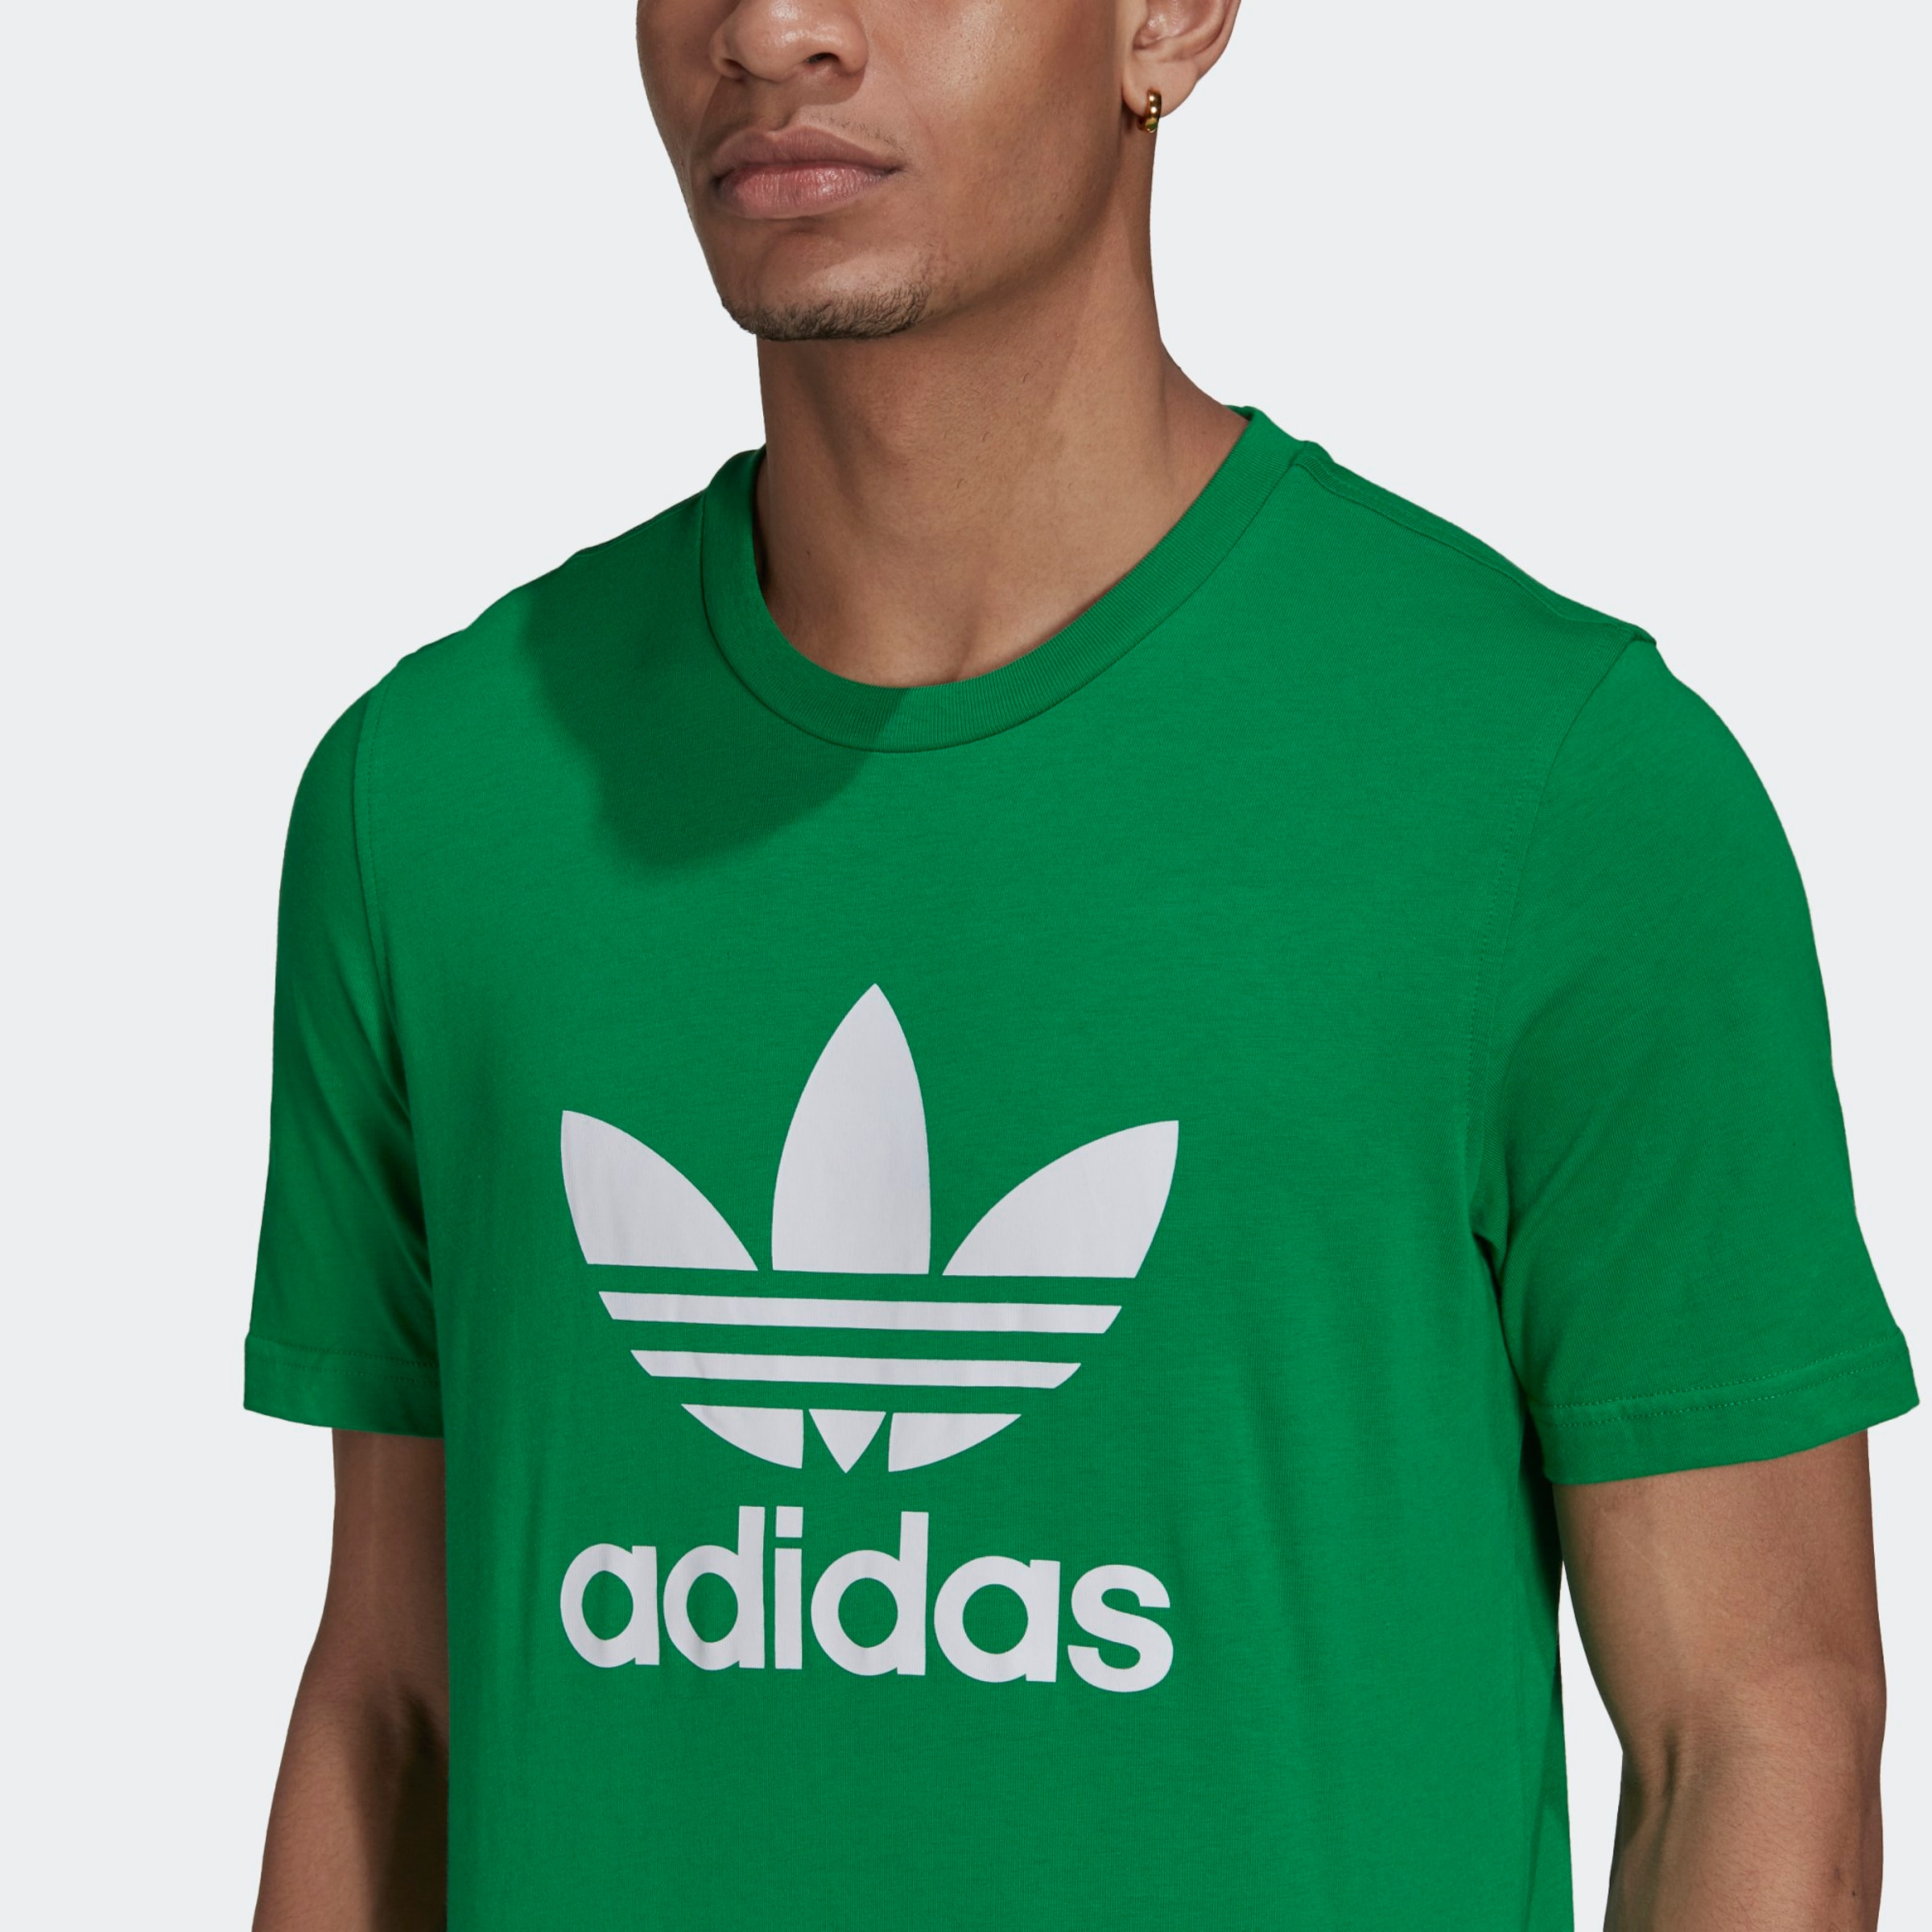 Адидас хлопок. Adidas Originals футболка зеленая. Футболка адидас зеленая мужская. Футболки шелкография адидас. Хлопок адидас.